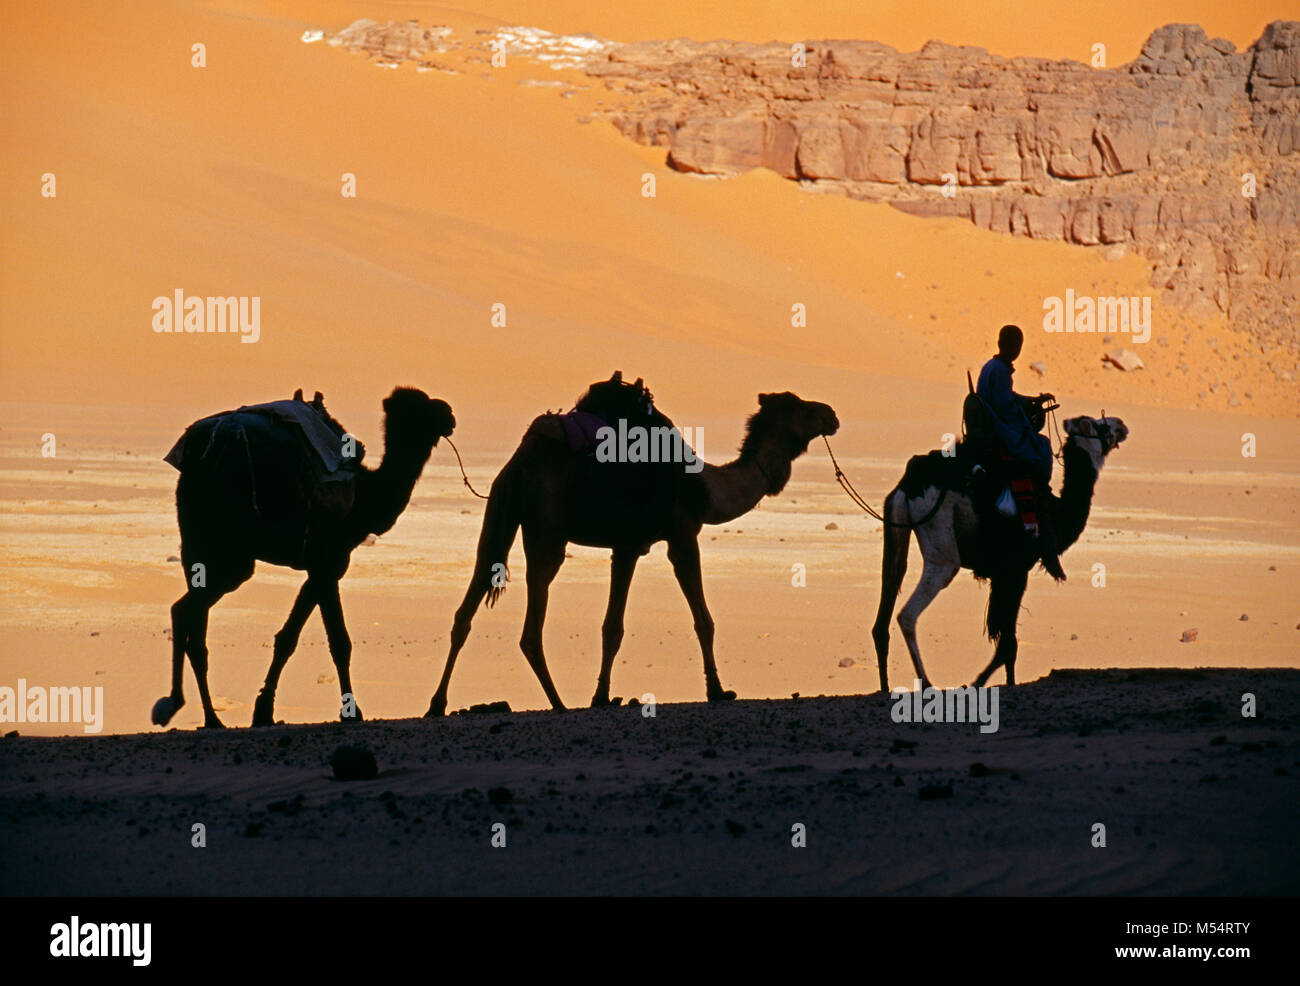 L'Algérie. Près de Djanet. Désert du Sahara. L'homme de tribu Touareg et caravanes de chameaux. Les dunes de sable. Silhouette. Banque D'Images